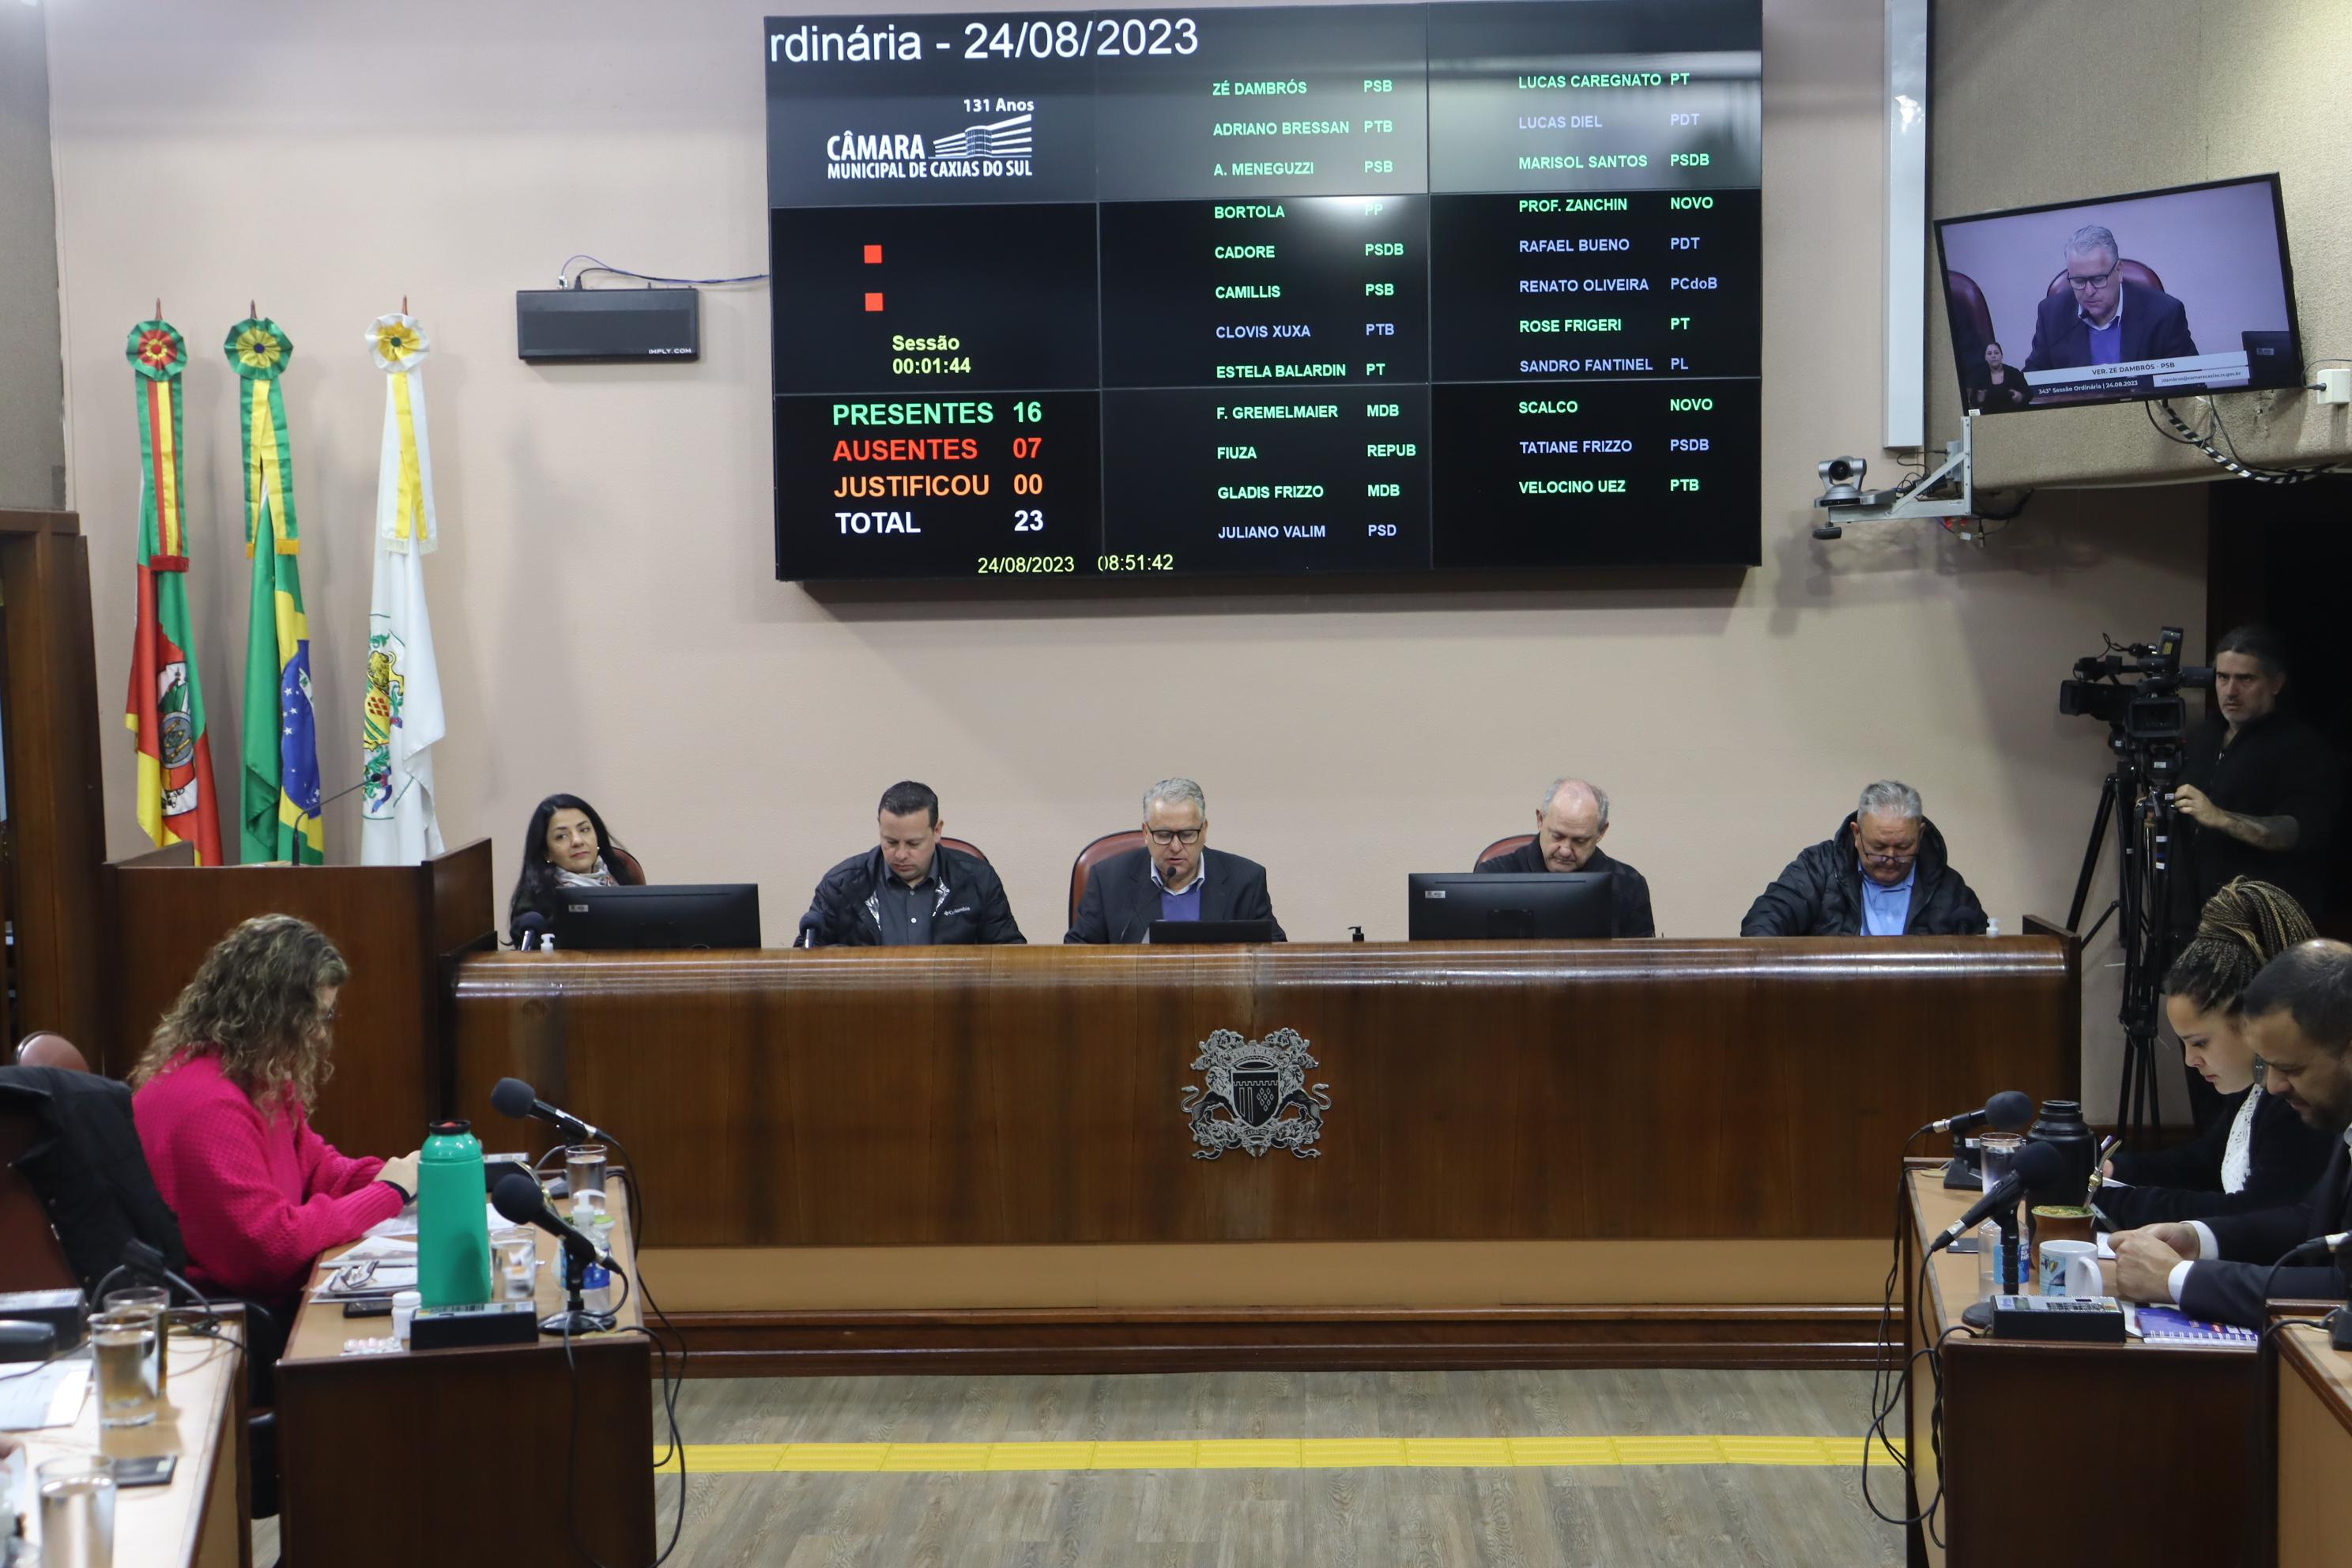 Plenário estuda incluir Romaria de Caravaggio no Calendário de Caxias